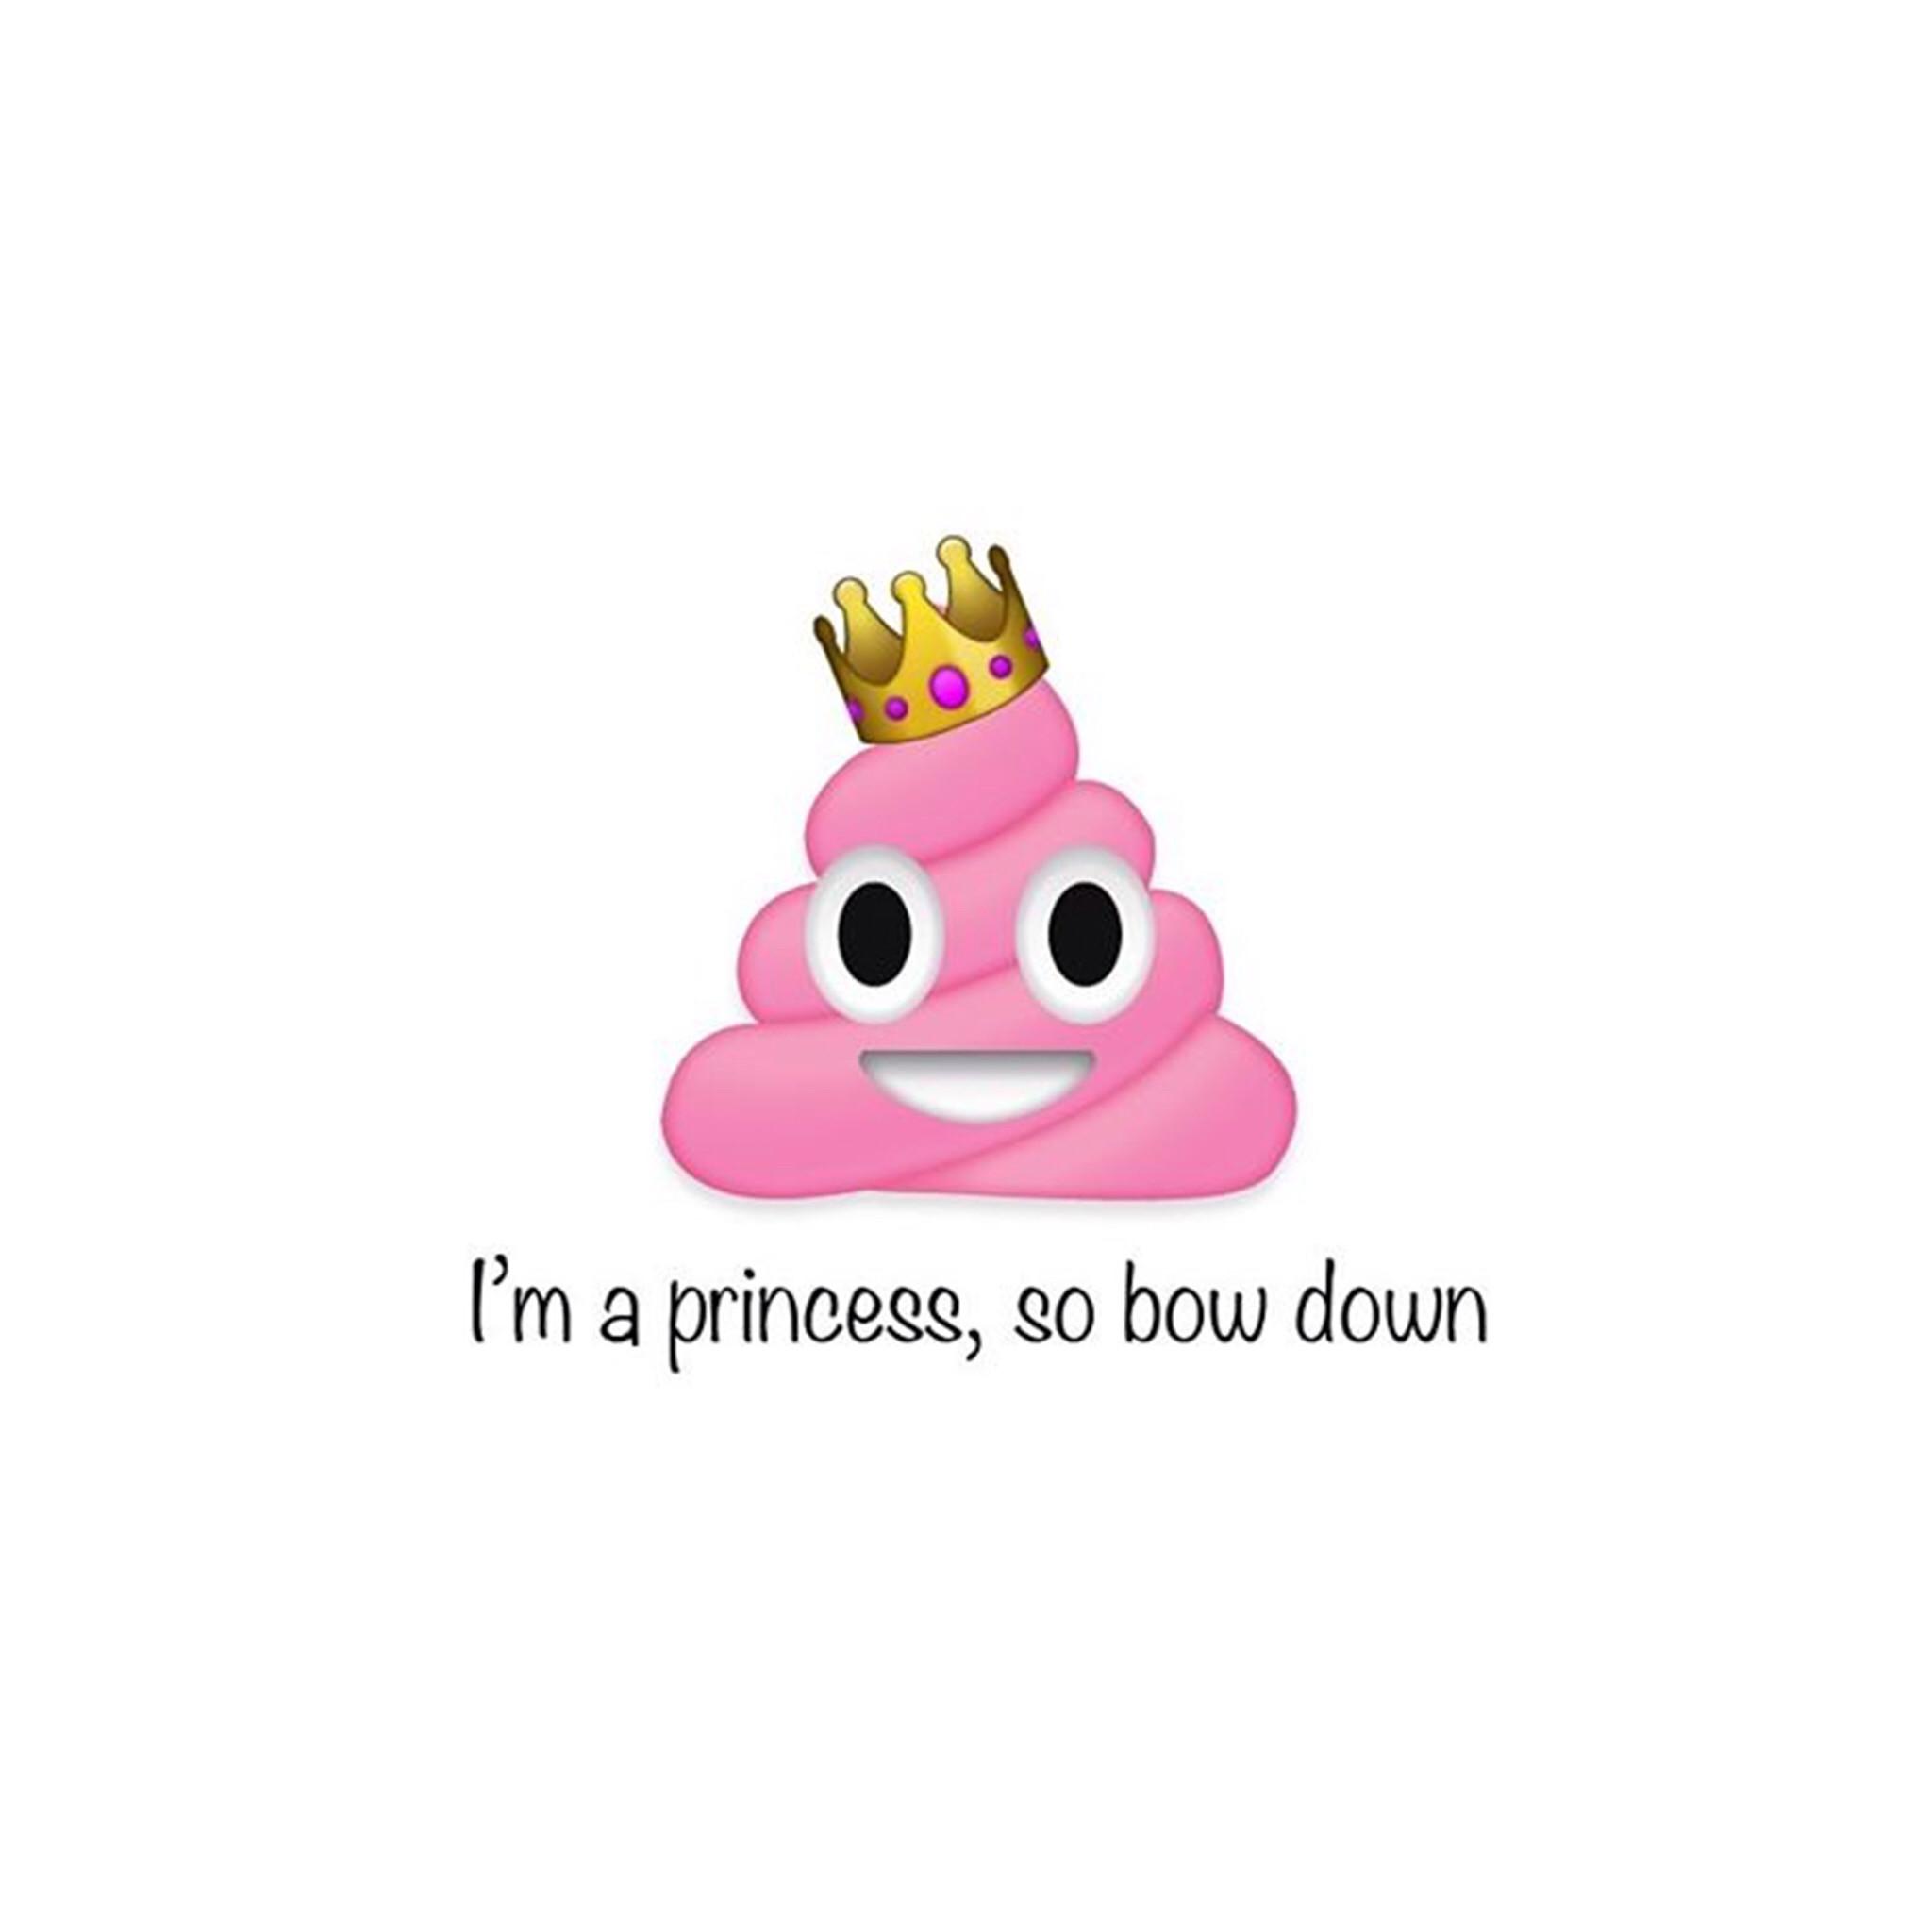 Queen Emoji Wallpaper